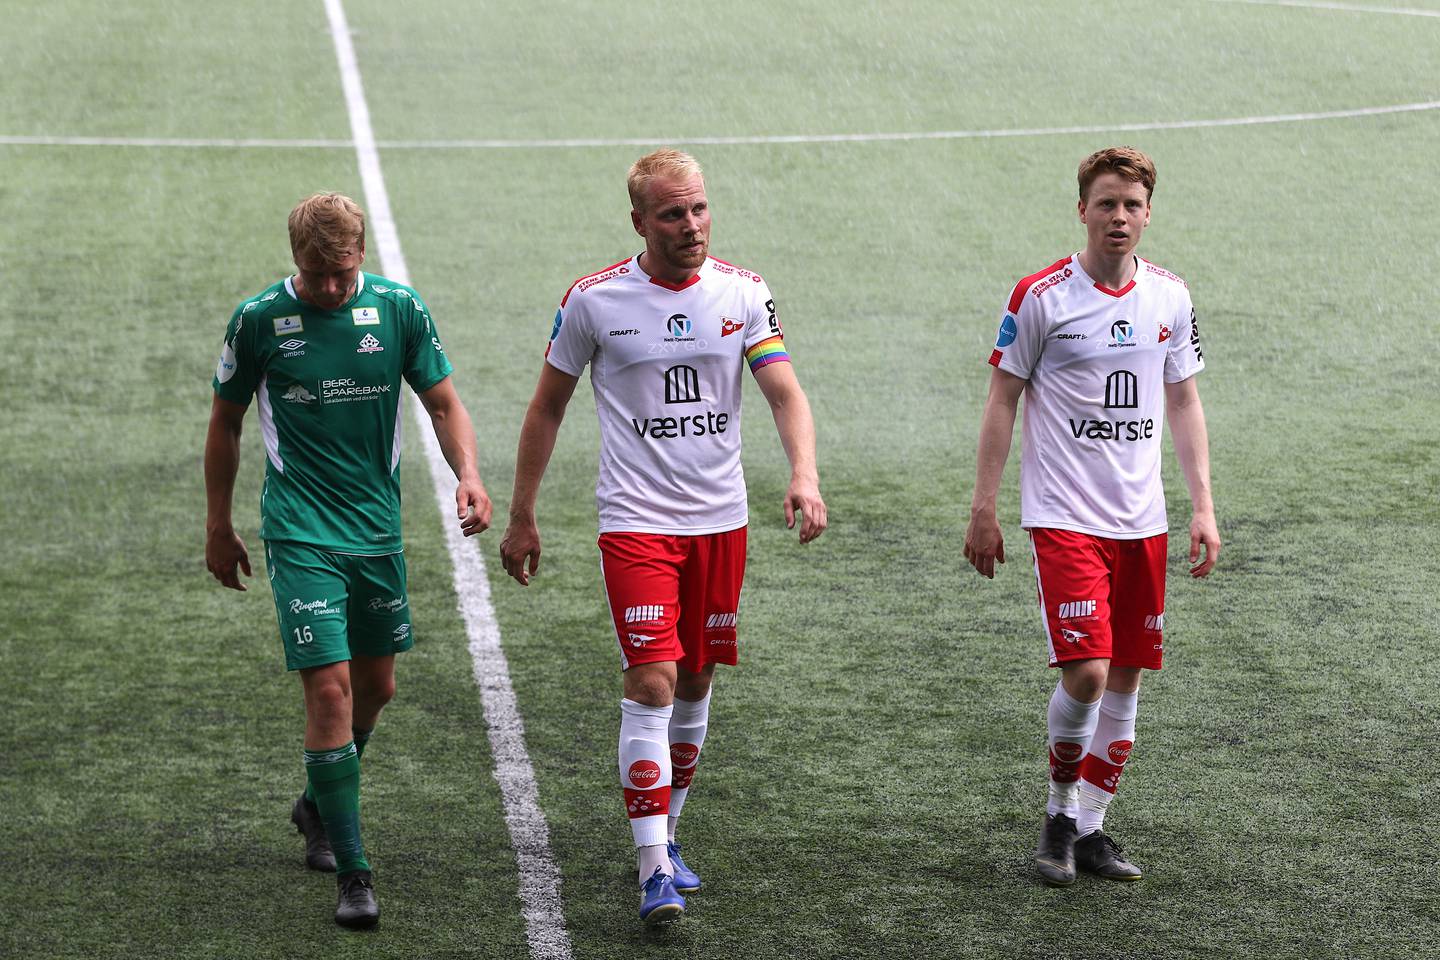 FFK - Kvik Halden lørdag 20.06.2020
Treningskamp
Fredrikstad Stadion
Henrik Kjelsrud Johansen. Håvard Åsheim